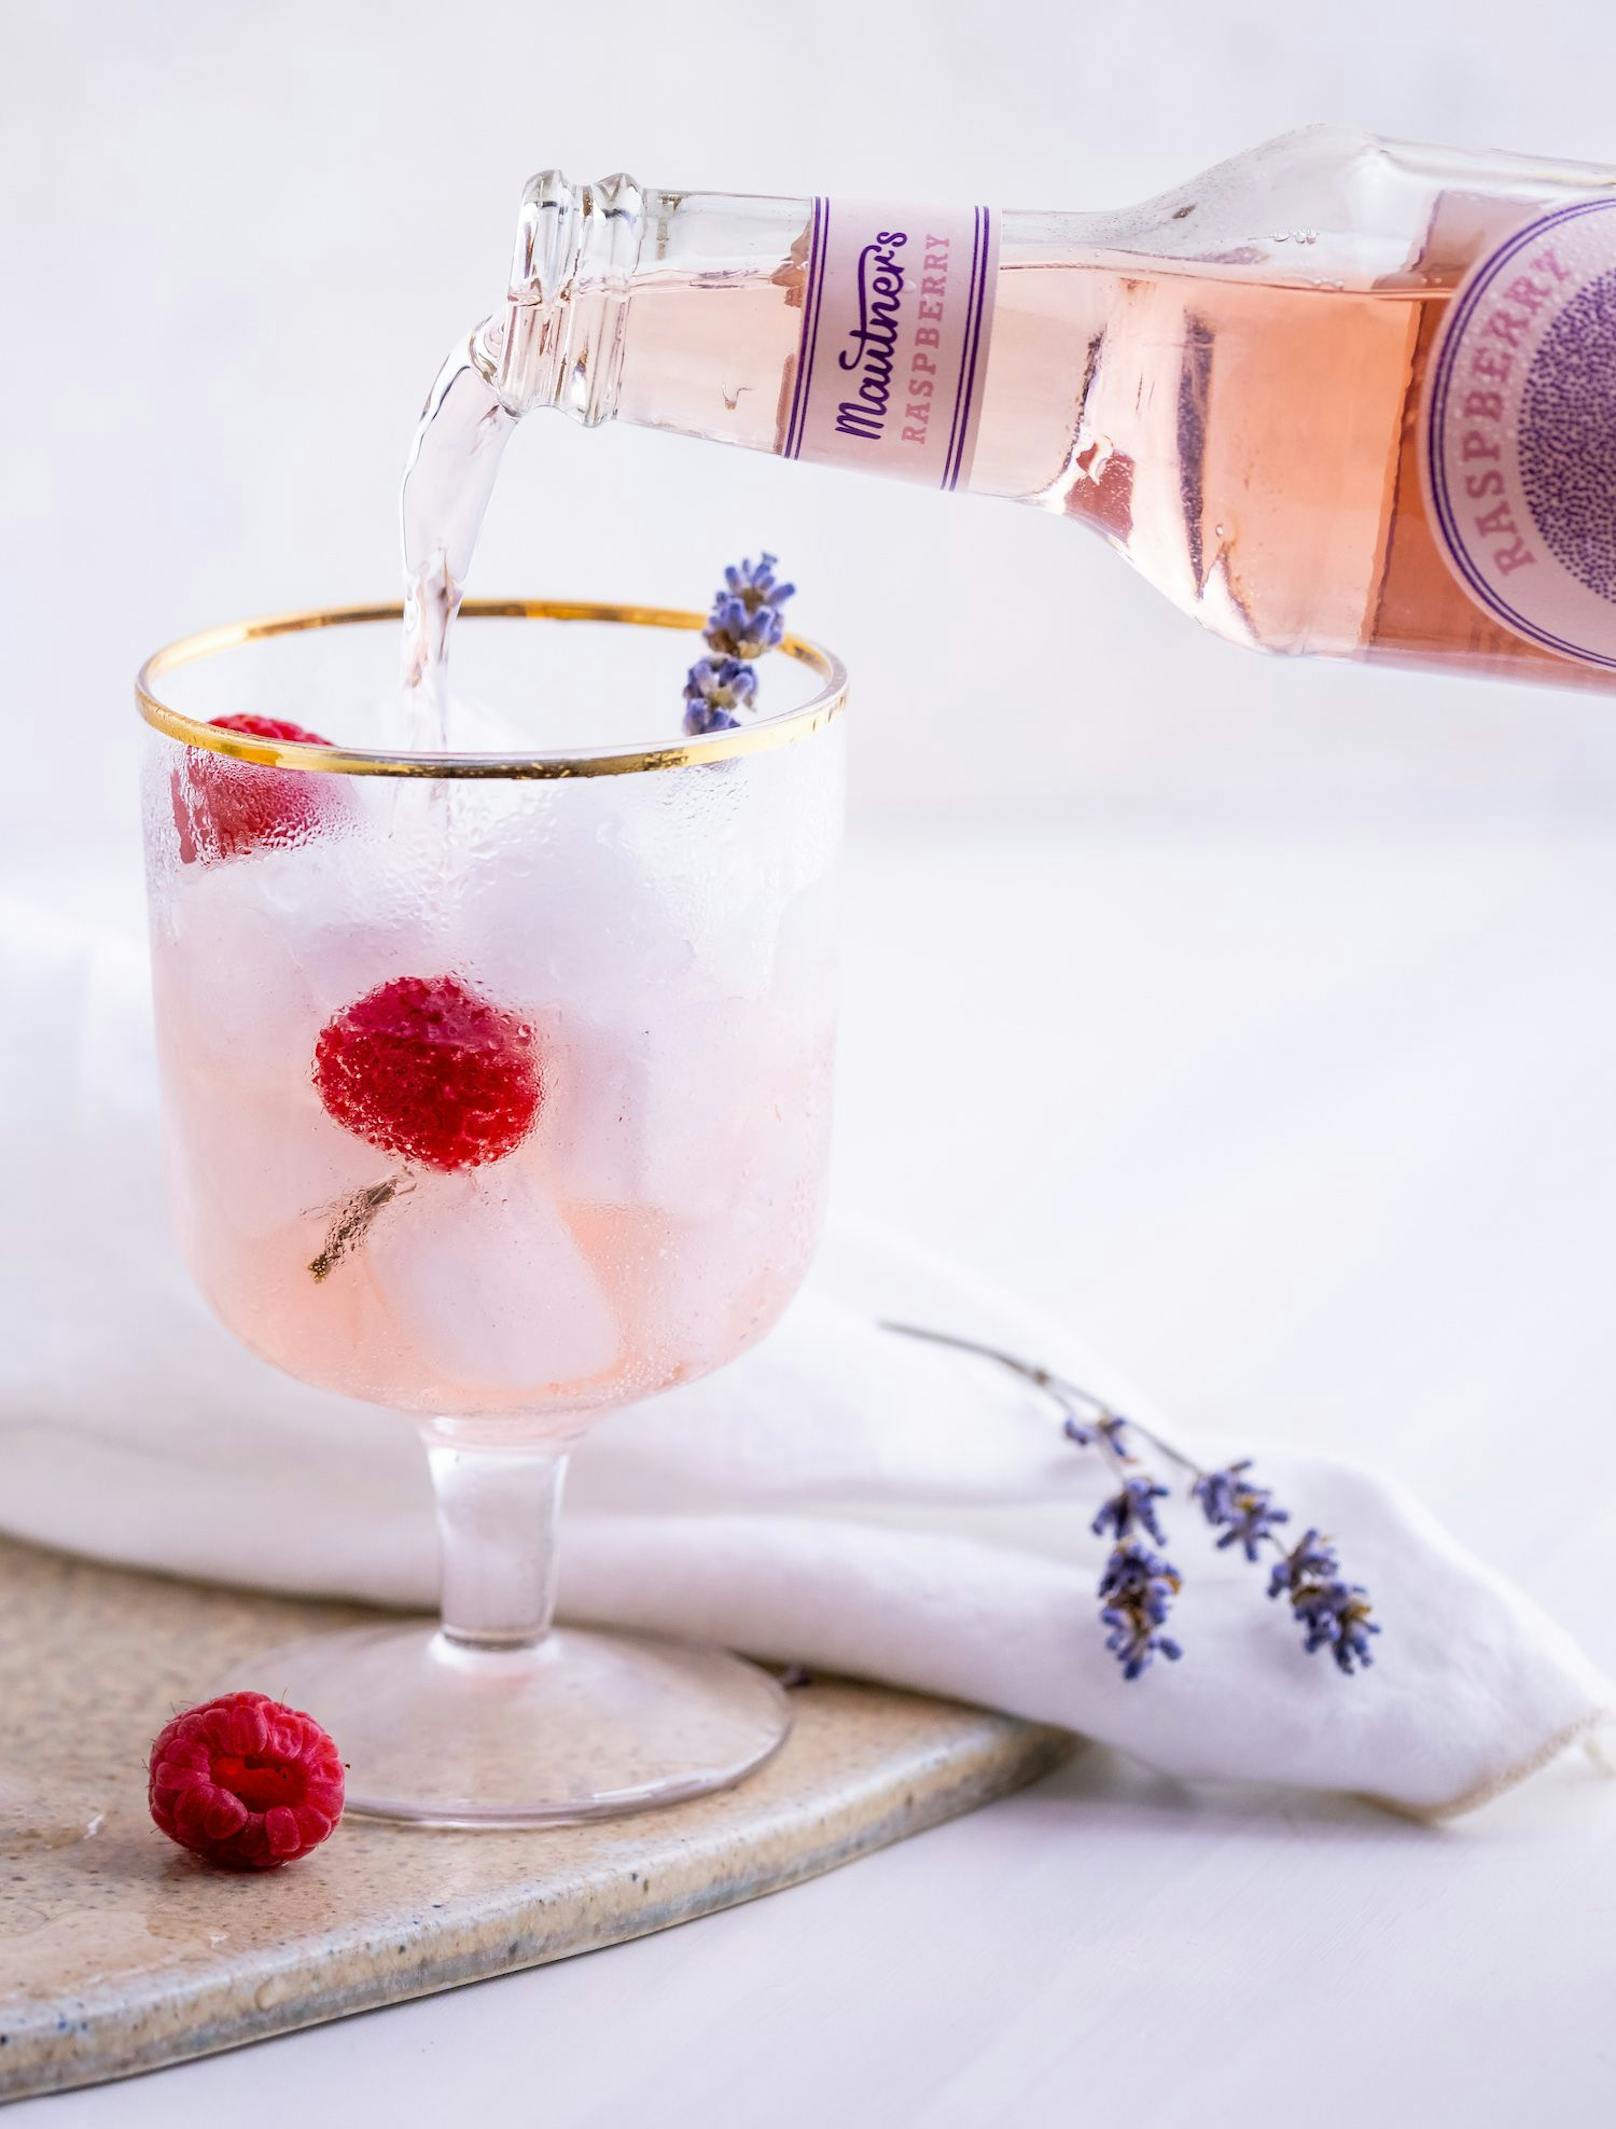 <strong>Raspberry Spritz:&nbsp;</strong>Eiswürfel in ein Glas geben, 6 cl Mautner’s Raspberry Vinegar Tonic eingießen und mit Prosecco auffüllen. Mit Himbeere und Lavendel garnieren und genießen.